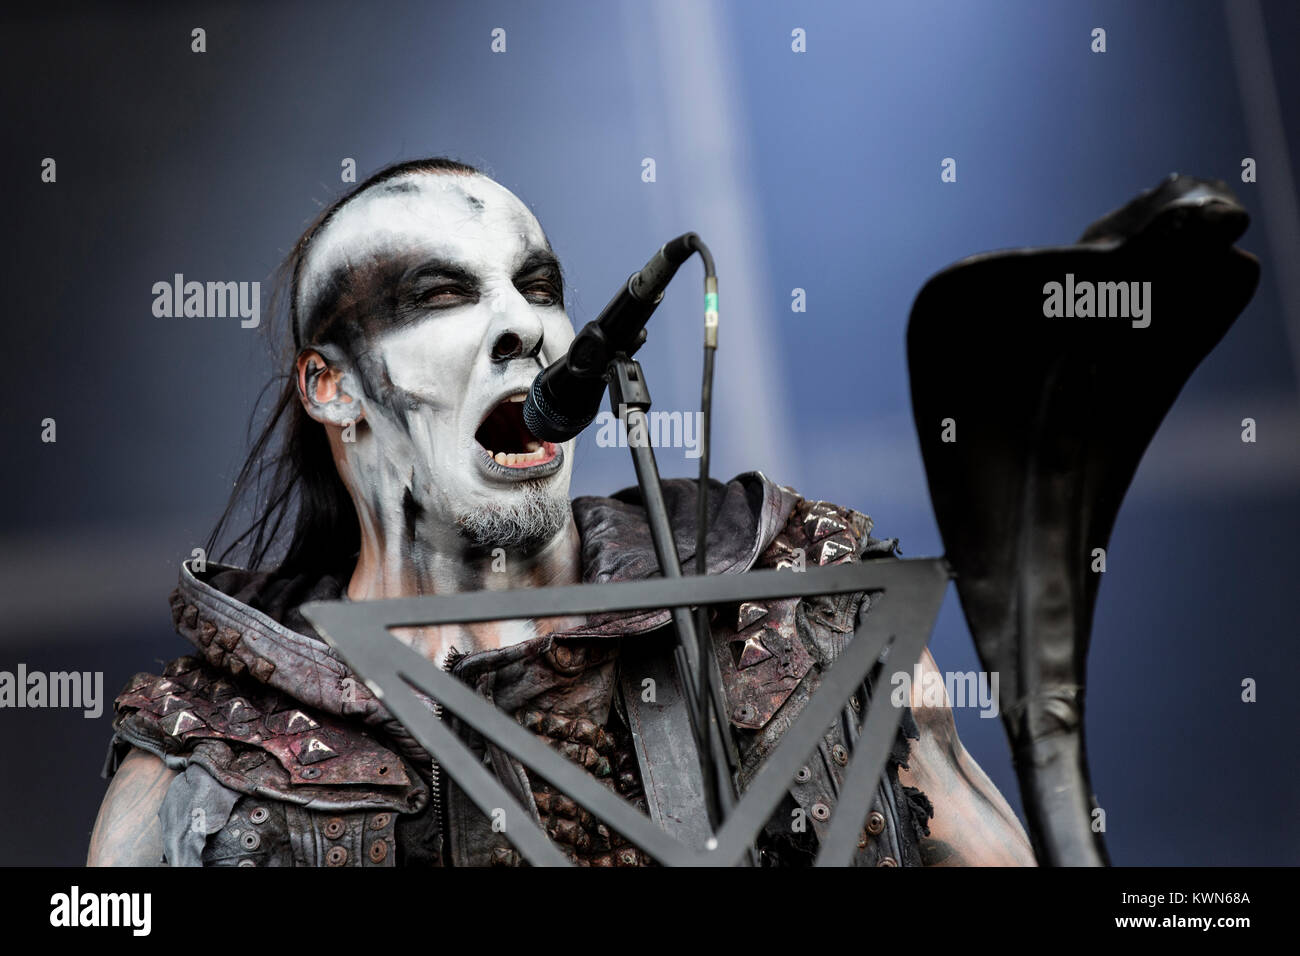 Il polacco della band death metal Behemoth esegue un concerto dal vivo presso il scandinavi heavy metal festival Copenhell 2014 a Copenaghen. Qui la band di bassista e musicista Tomasz " Orion " Wróblewski è raffigurato dal vivo sul palco. Danimarca 13/06 2014. Foto Stock